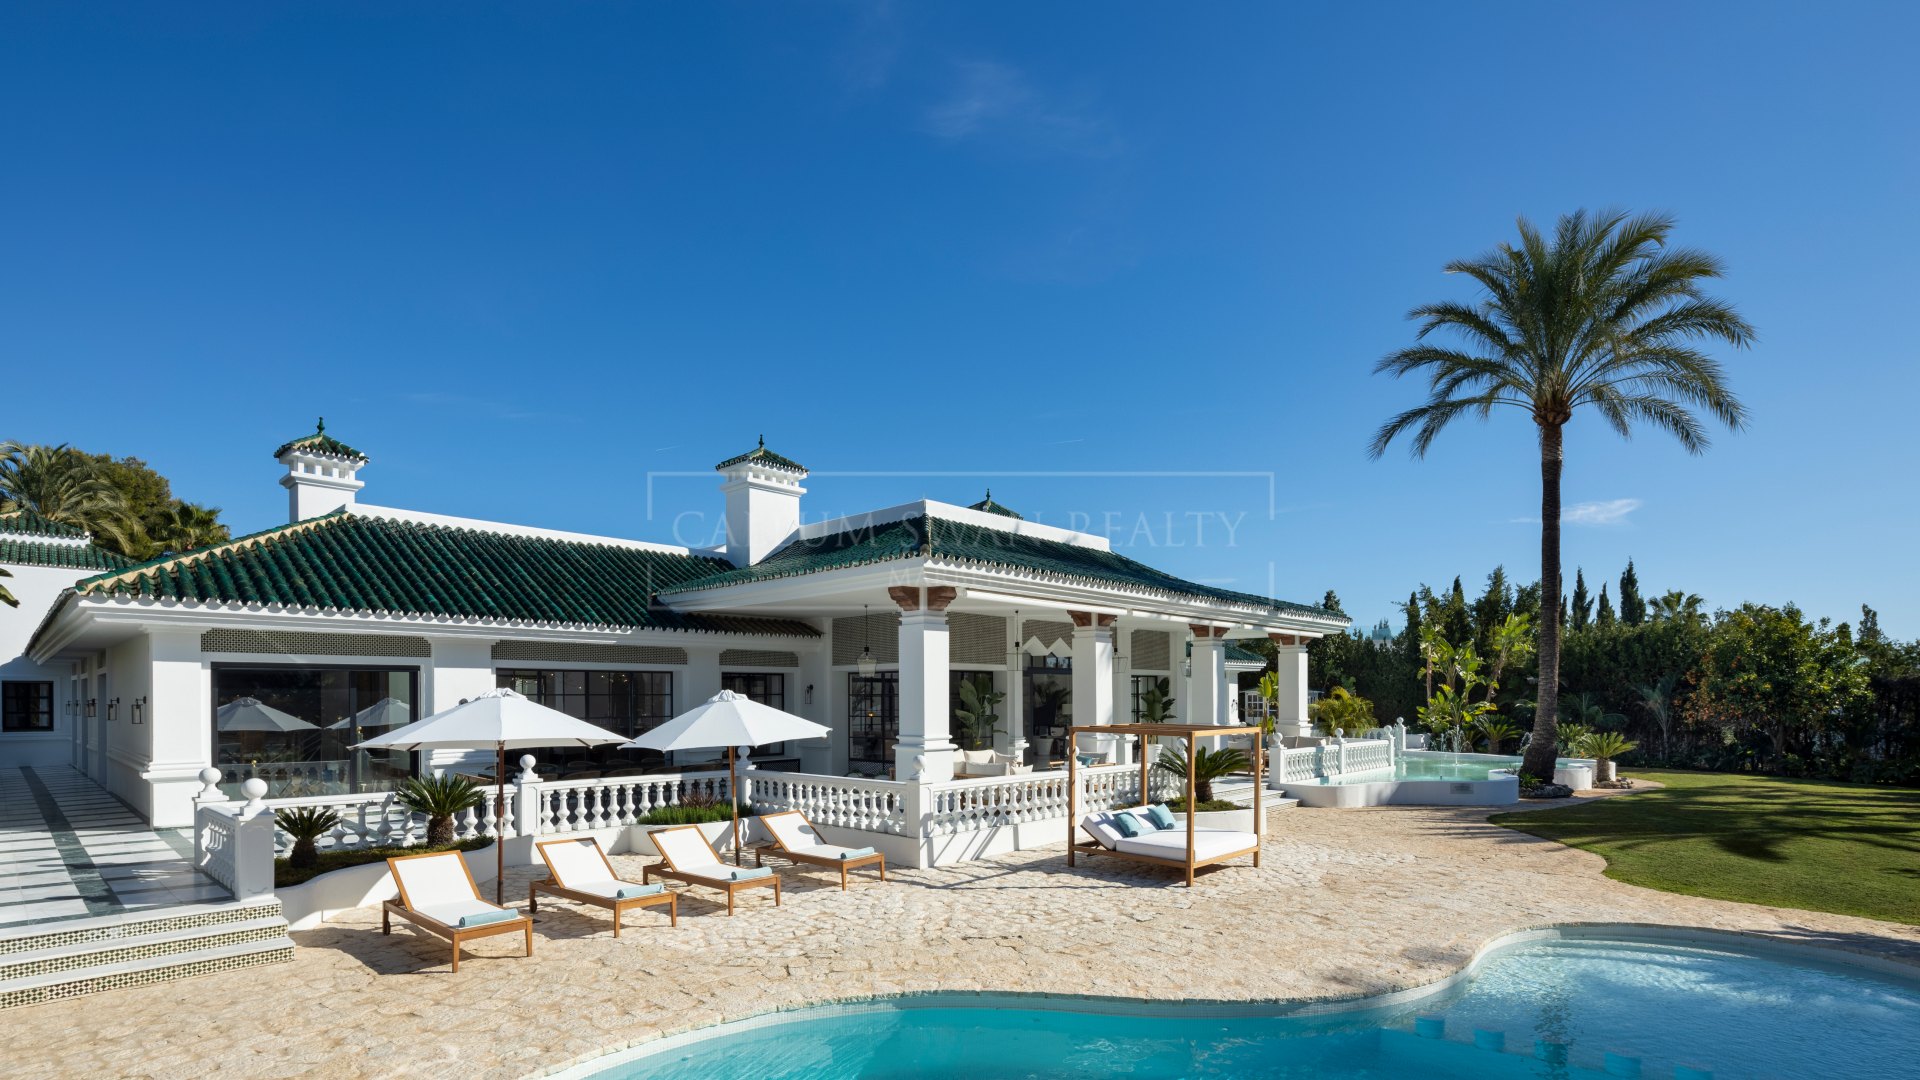 Preciosa villa de lujo de estilo morisco con encanto andaluz en Aloha